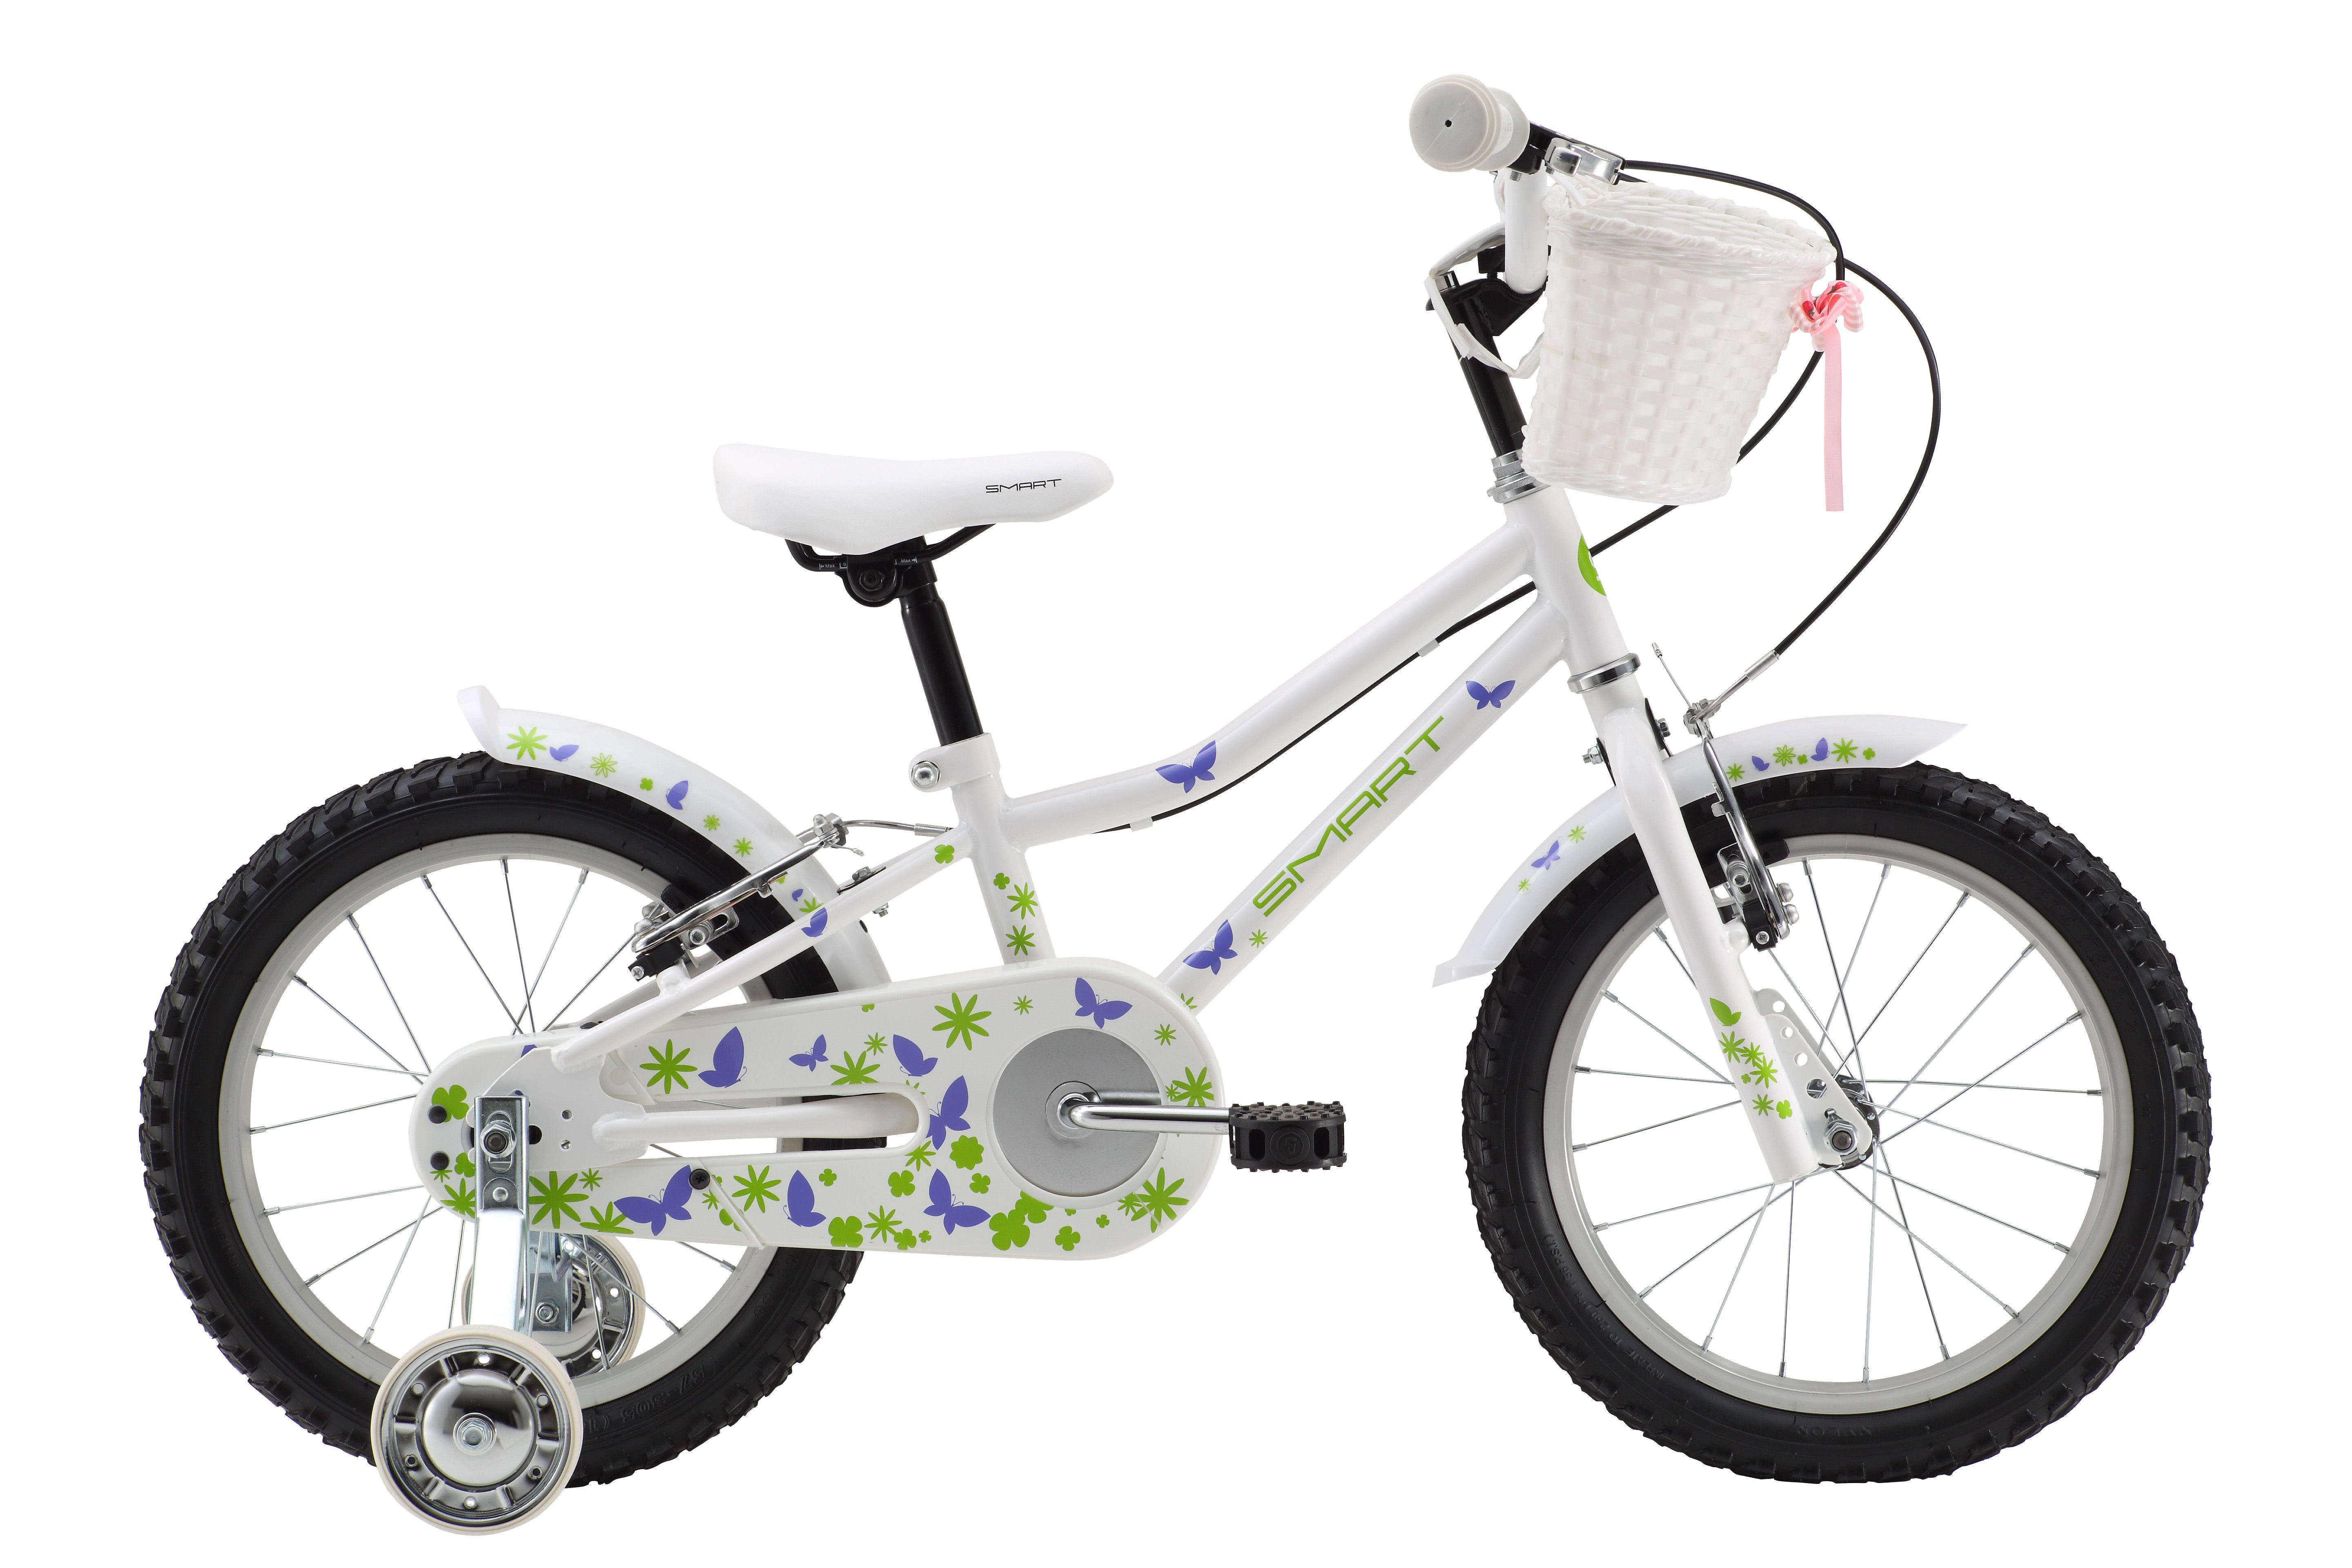  Отзывы о Детском велосипеде Smart Girl 2015